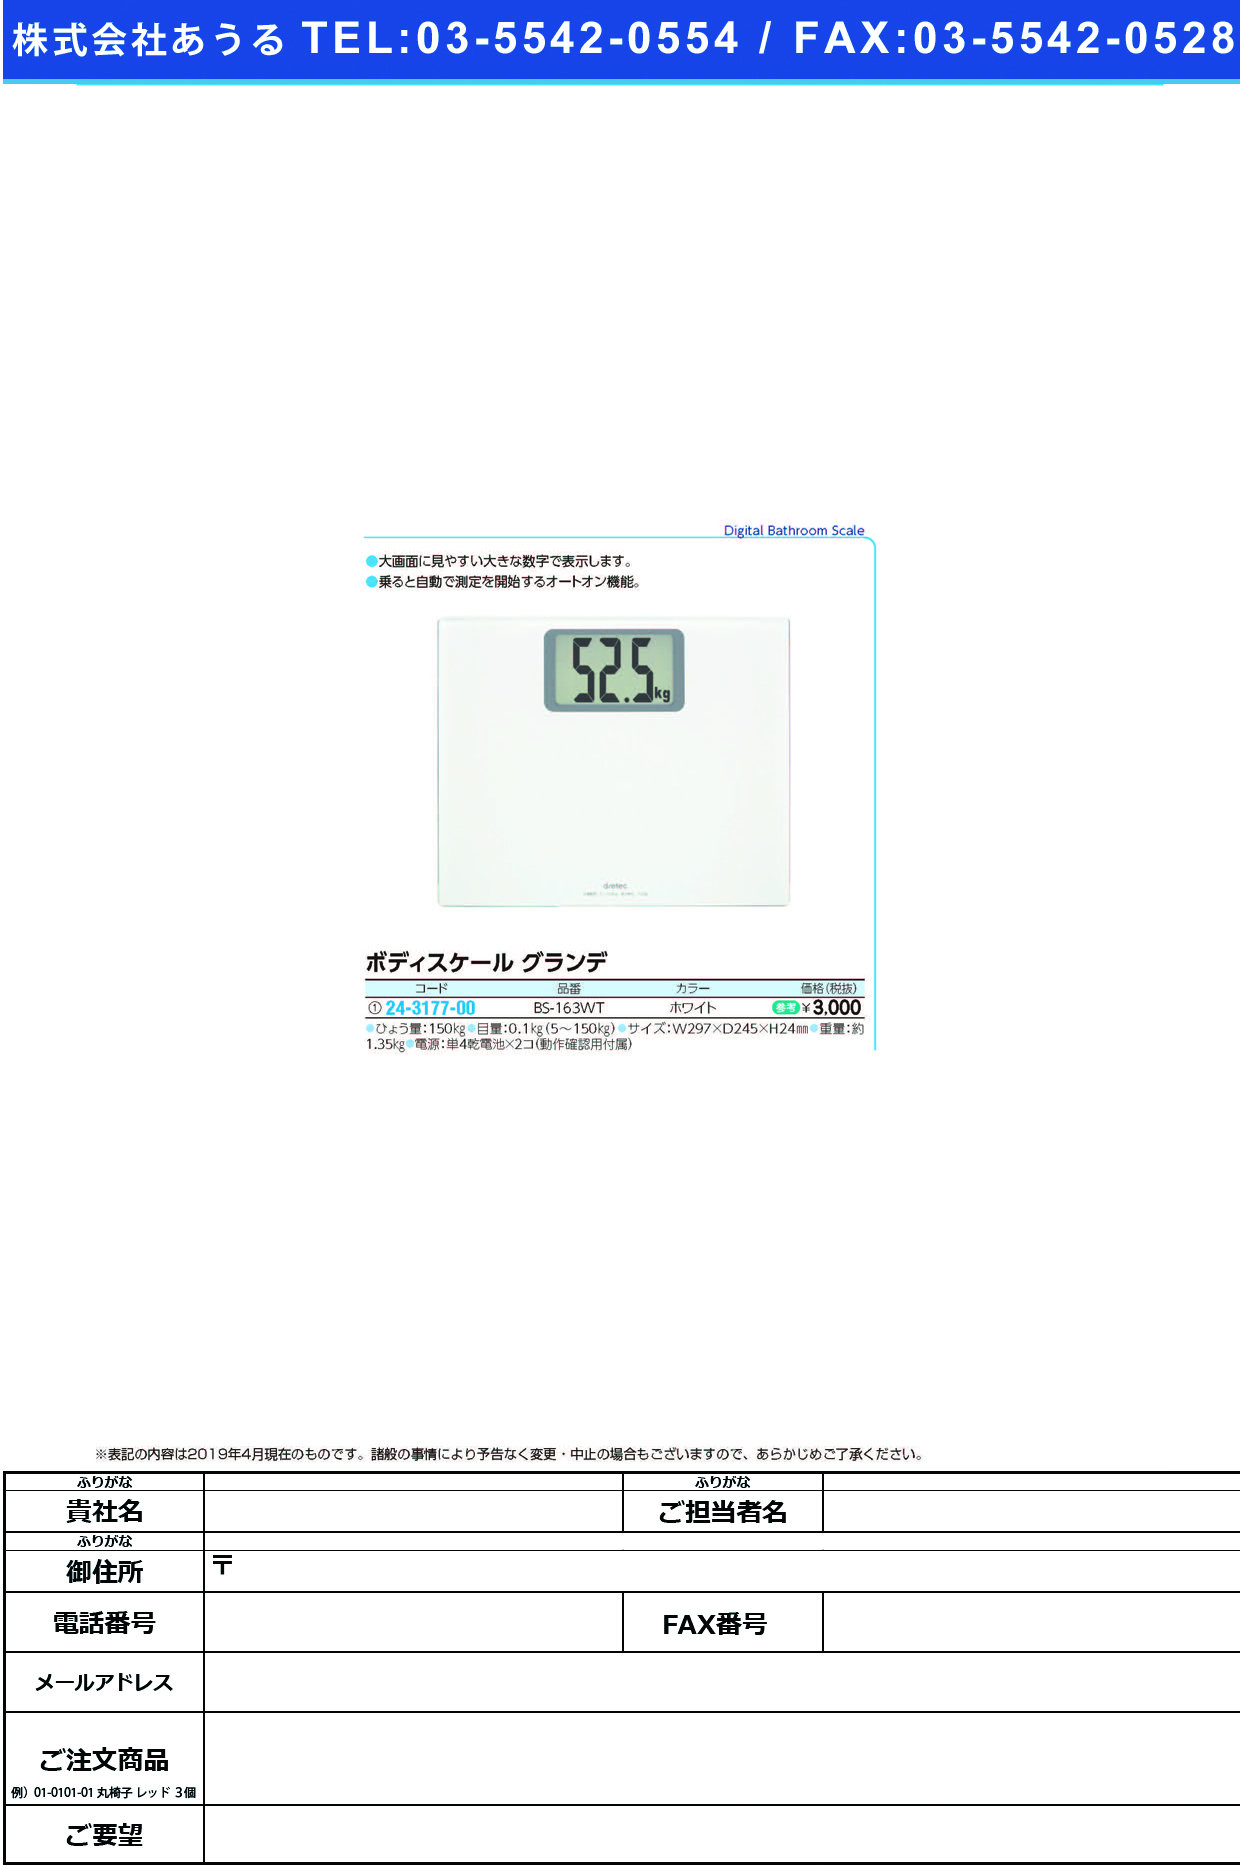 (24-3177-00)ボディスケールグランデ BS-163WT(ﾎﾜｲﾄ) ﾎﾞﾃﾞｨｽｹｰﾙｸﾞﾗﾝﾃﾞ(ドリテック)【1台単位】【2019年カタログ商品】